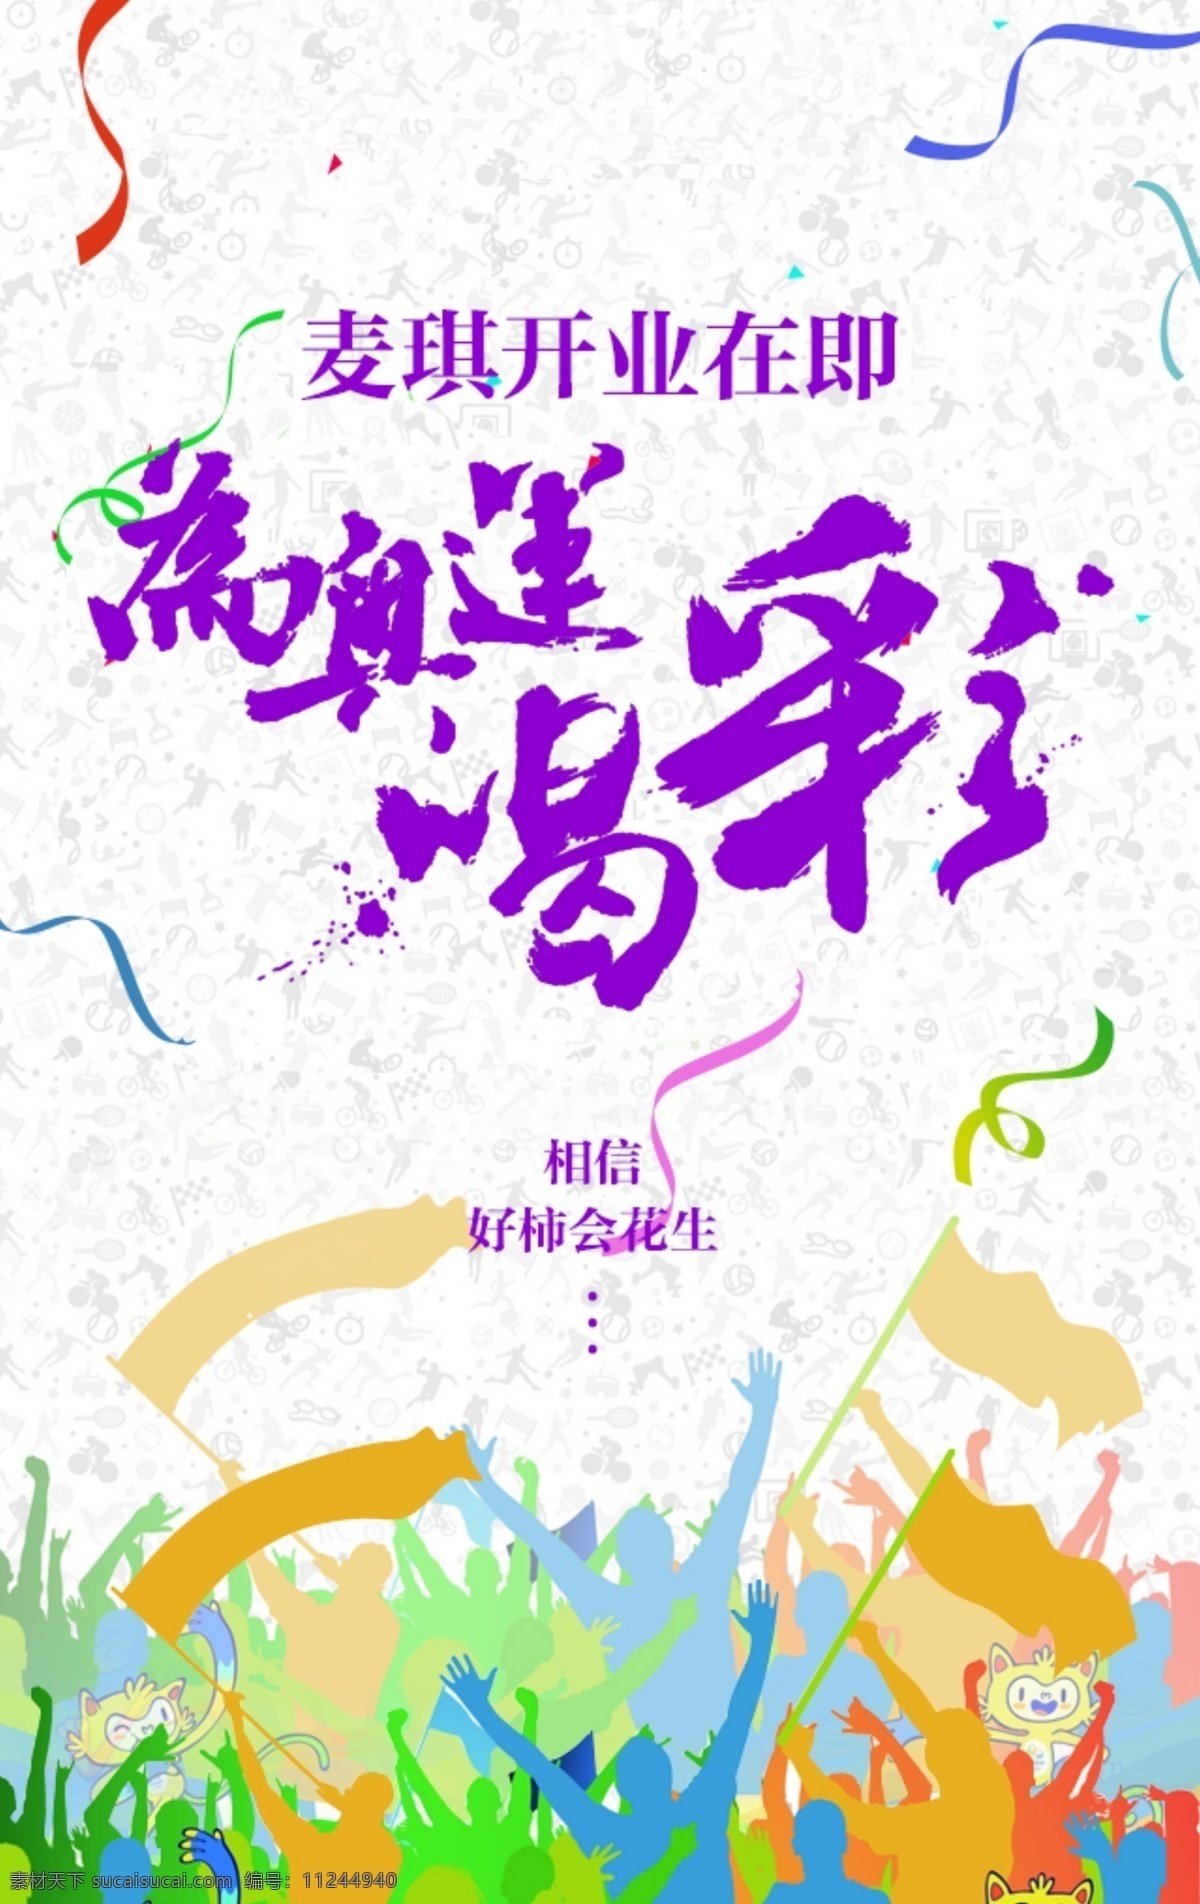 微 信 朋友 圈 奥运 专题 开业 海报 微信 紫色 喝彩 彩带